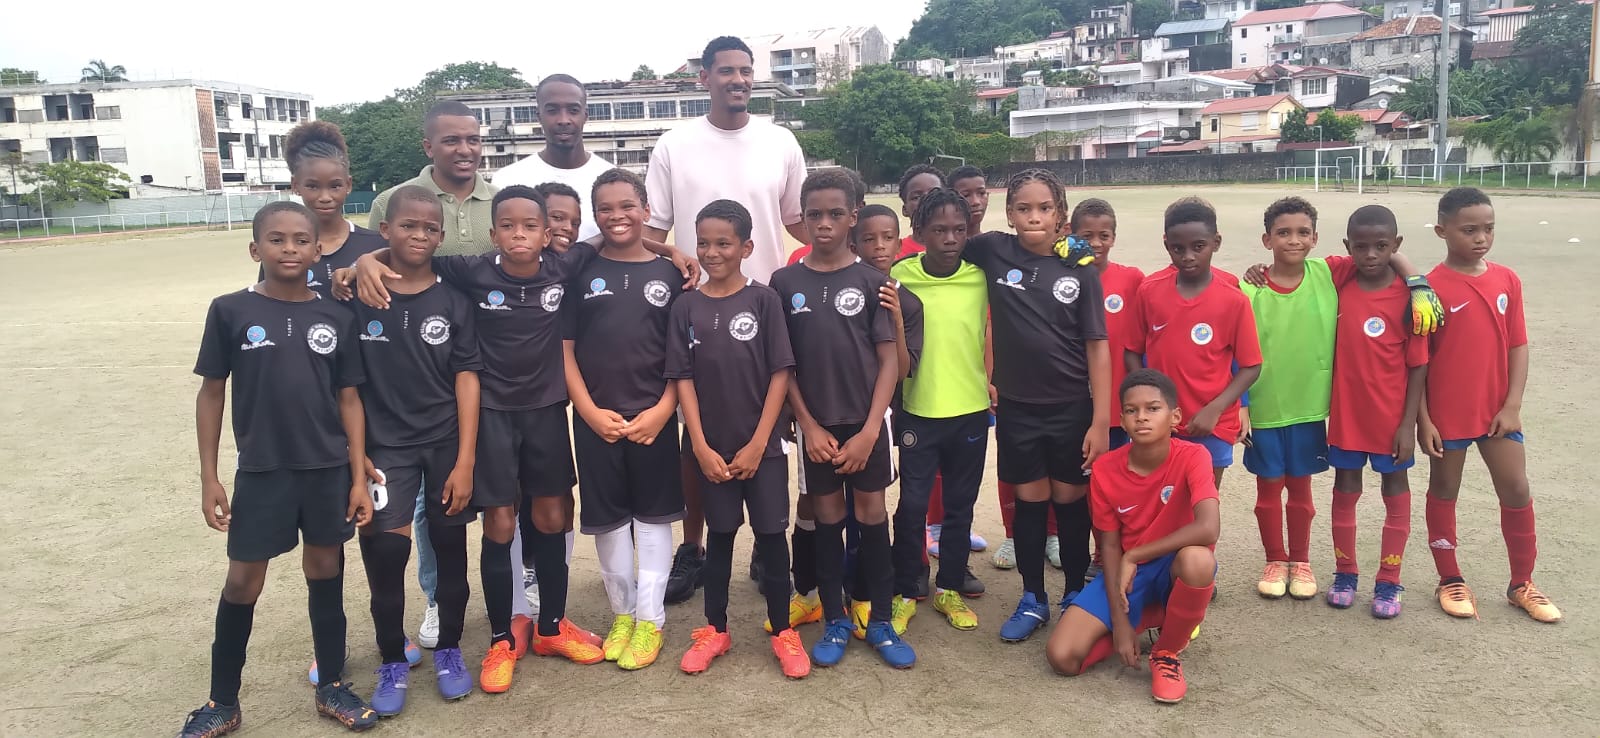     Le footballeur professionnel Sébastien Haller à la rencontre des jeunes Martiniquais 

